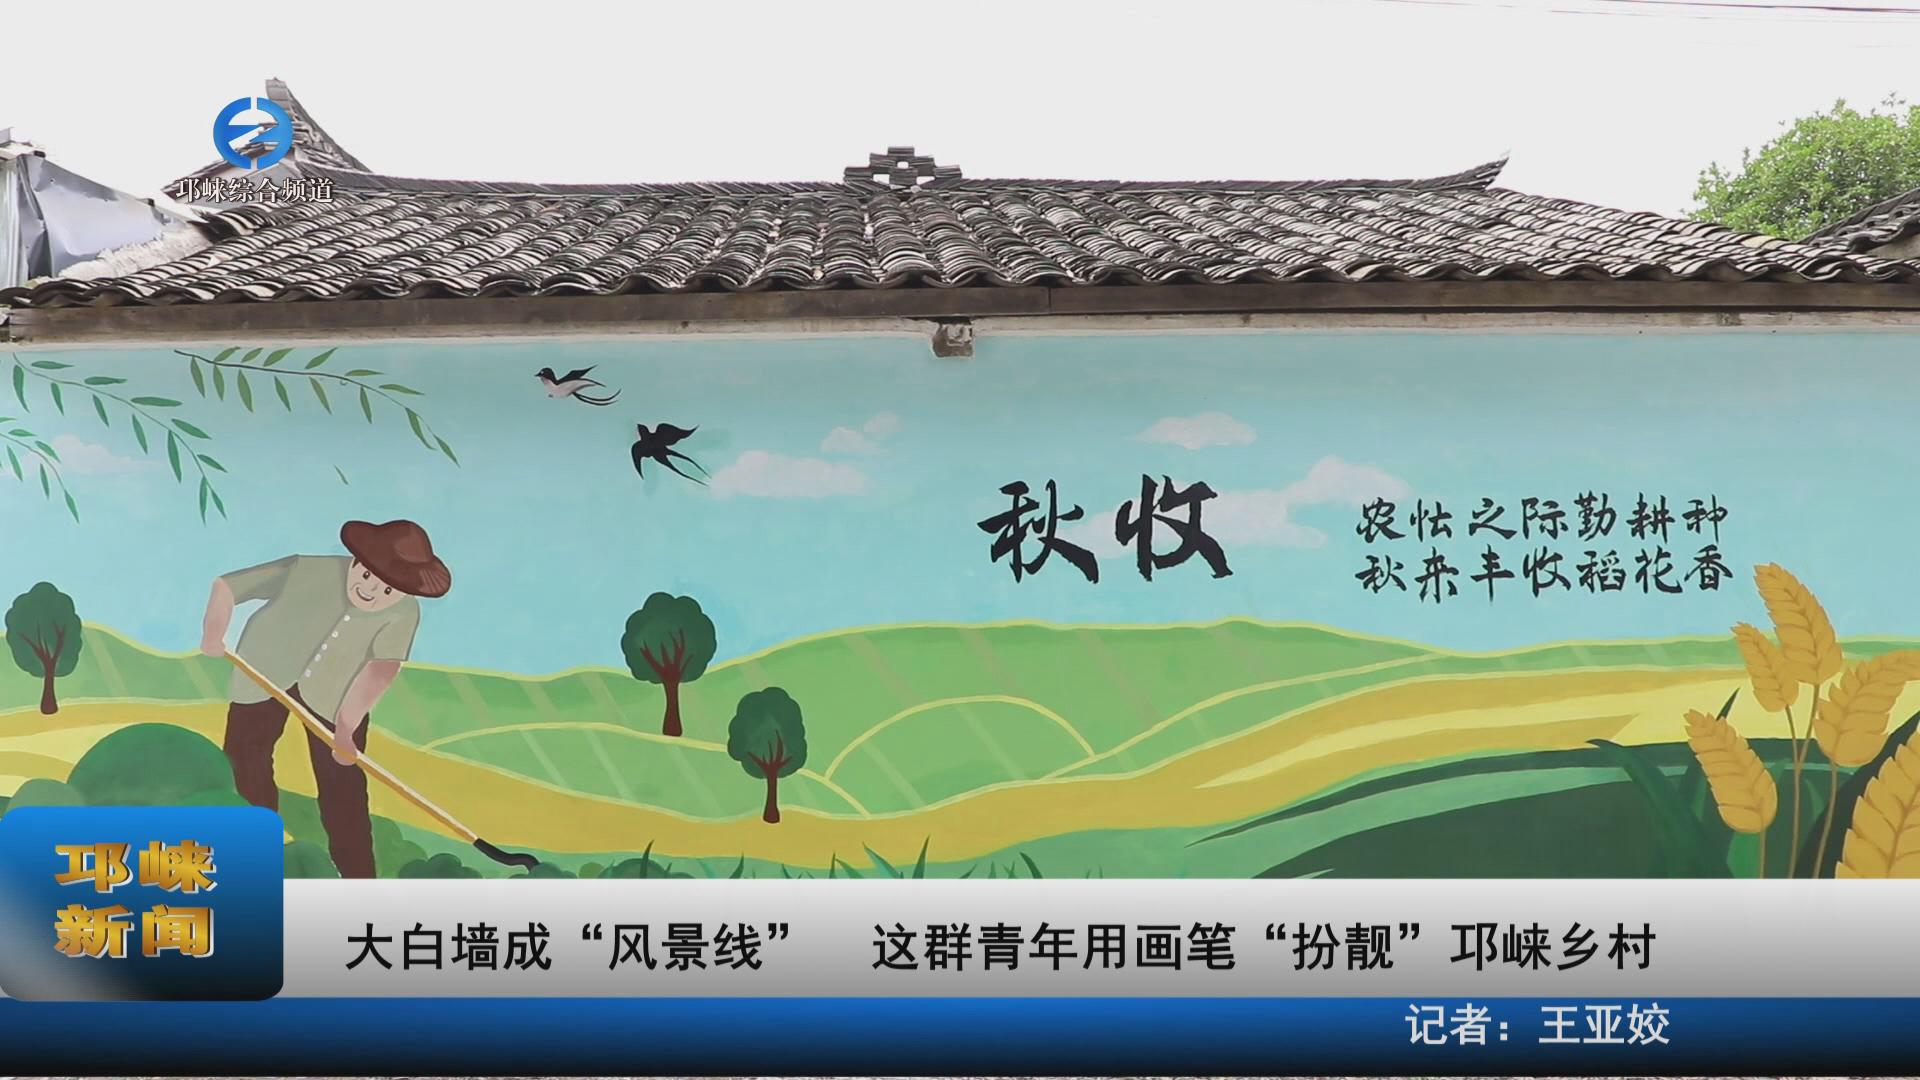 【20230706】大白墙成“风景线”  这群青年用画笔“扮靓”邛崃乡村